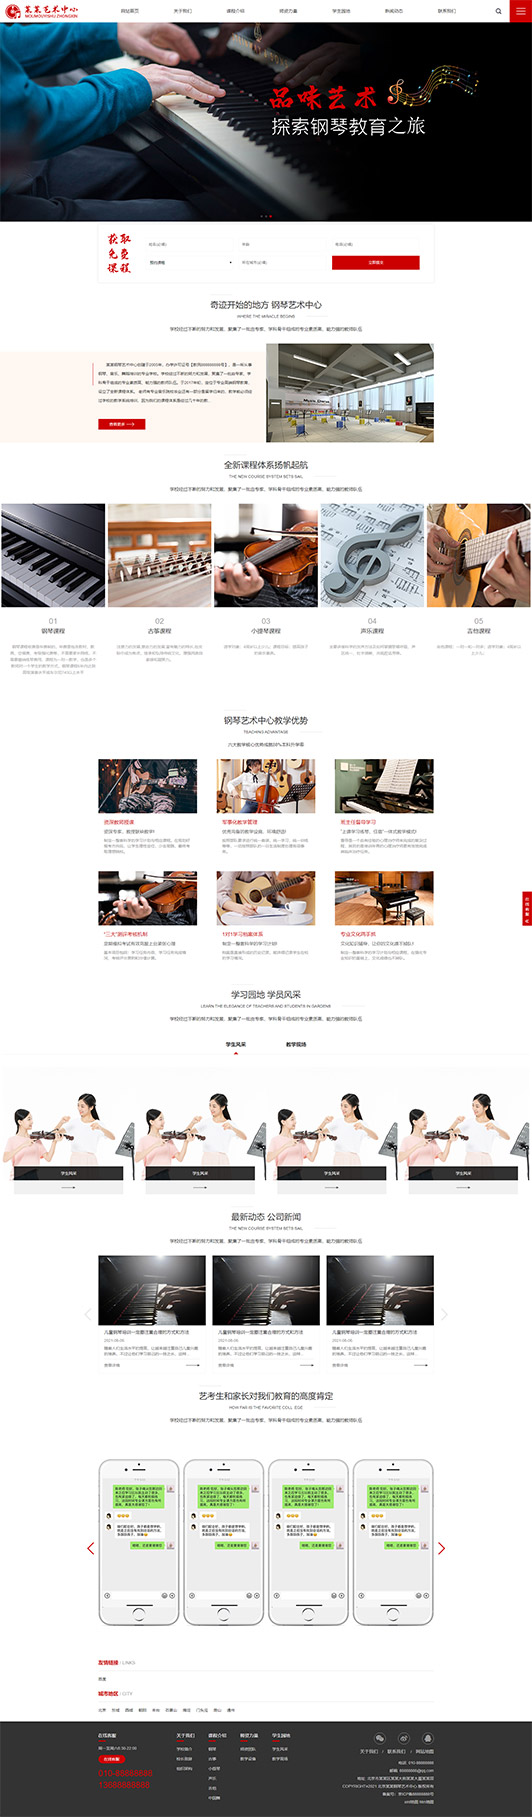 烟台钢琴艺术培训公司响应式企业网站